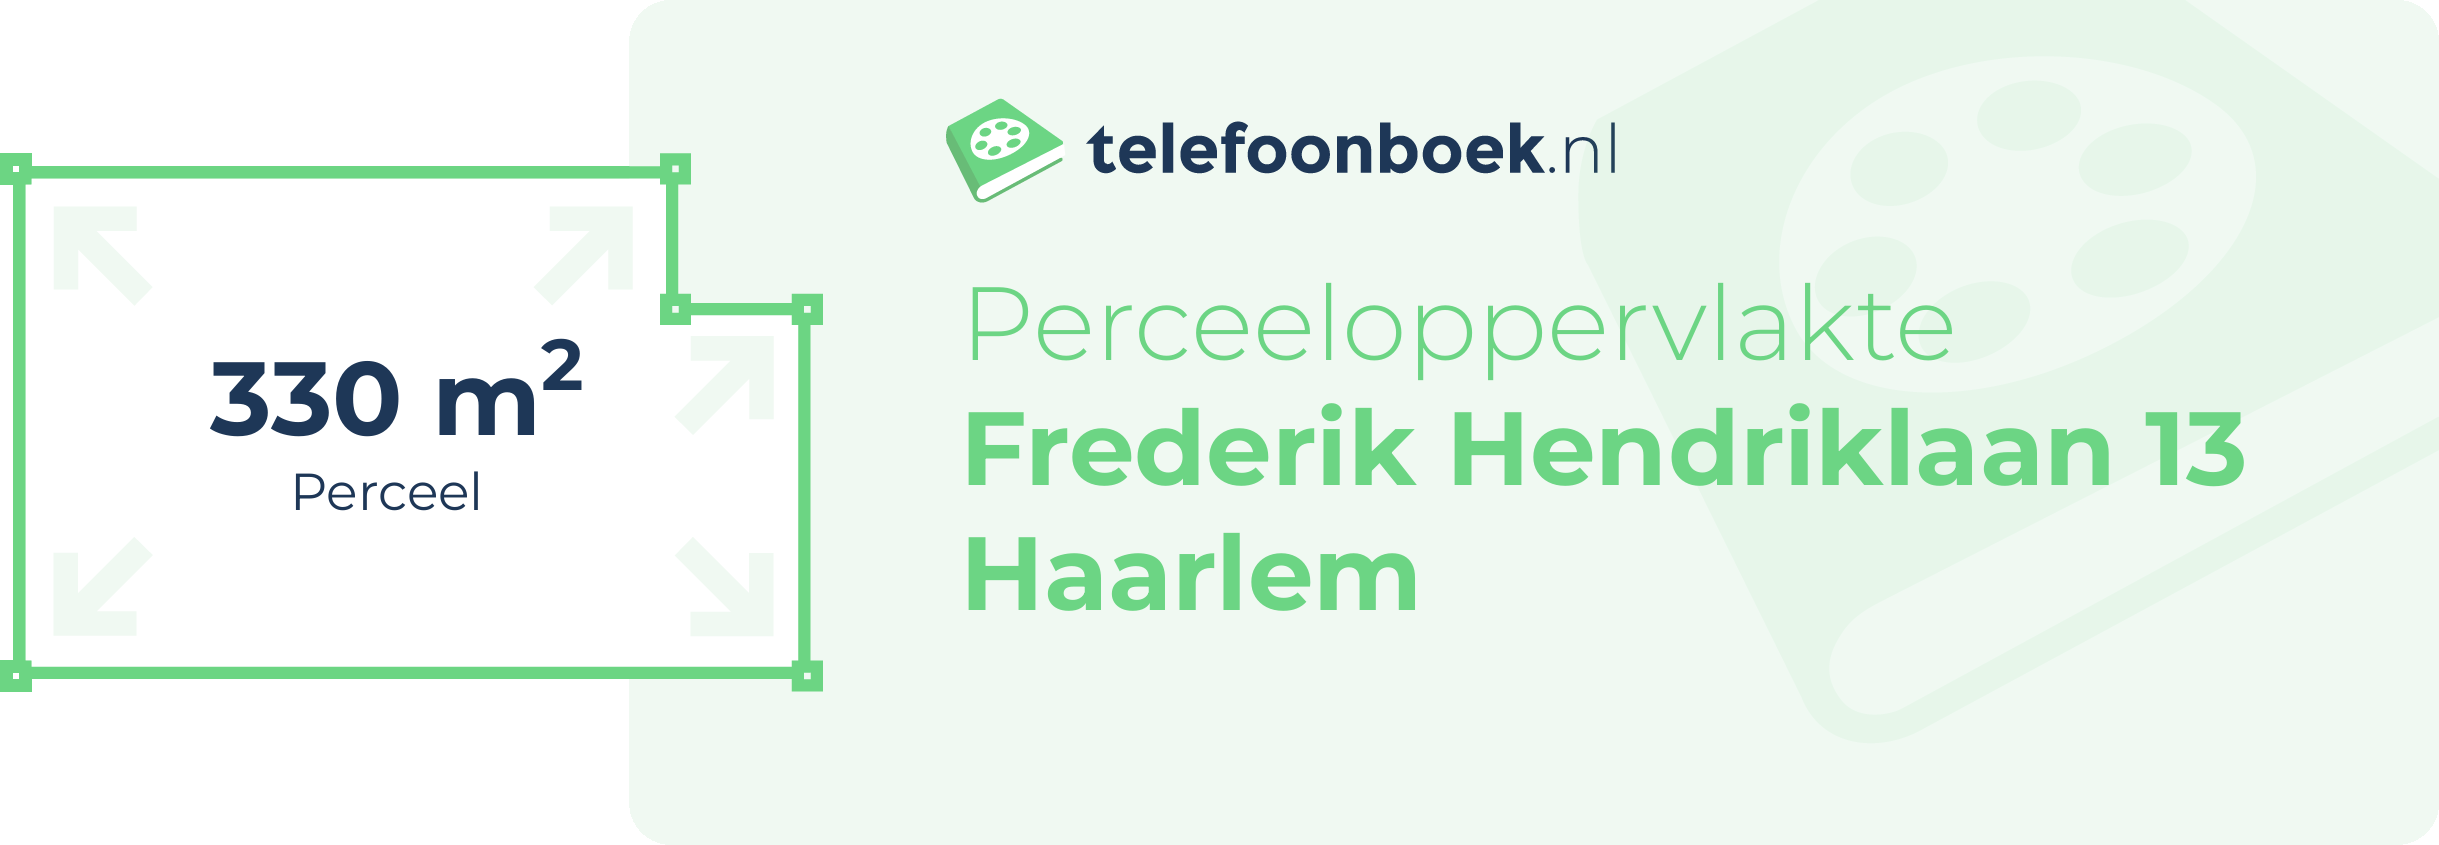 Perceeloppervlakte Frederik Hendriklaan 13 Haarlem